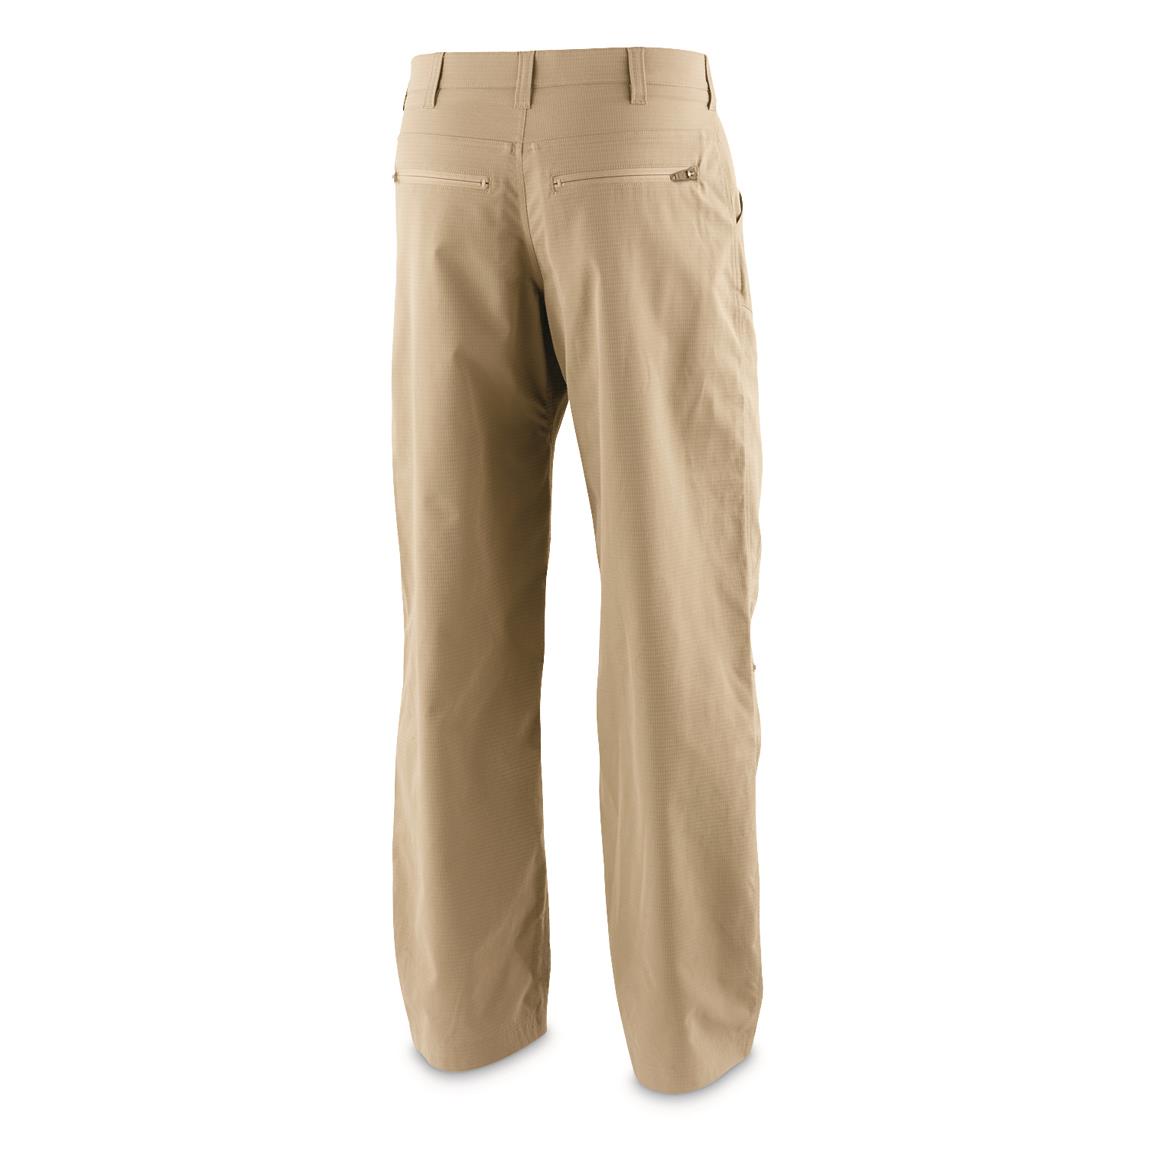 Simms Men's Challenger Sweatpants - 722365, Jeans & Pants at